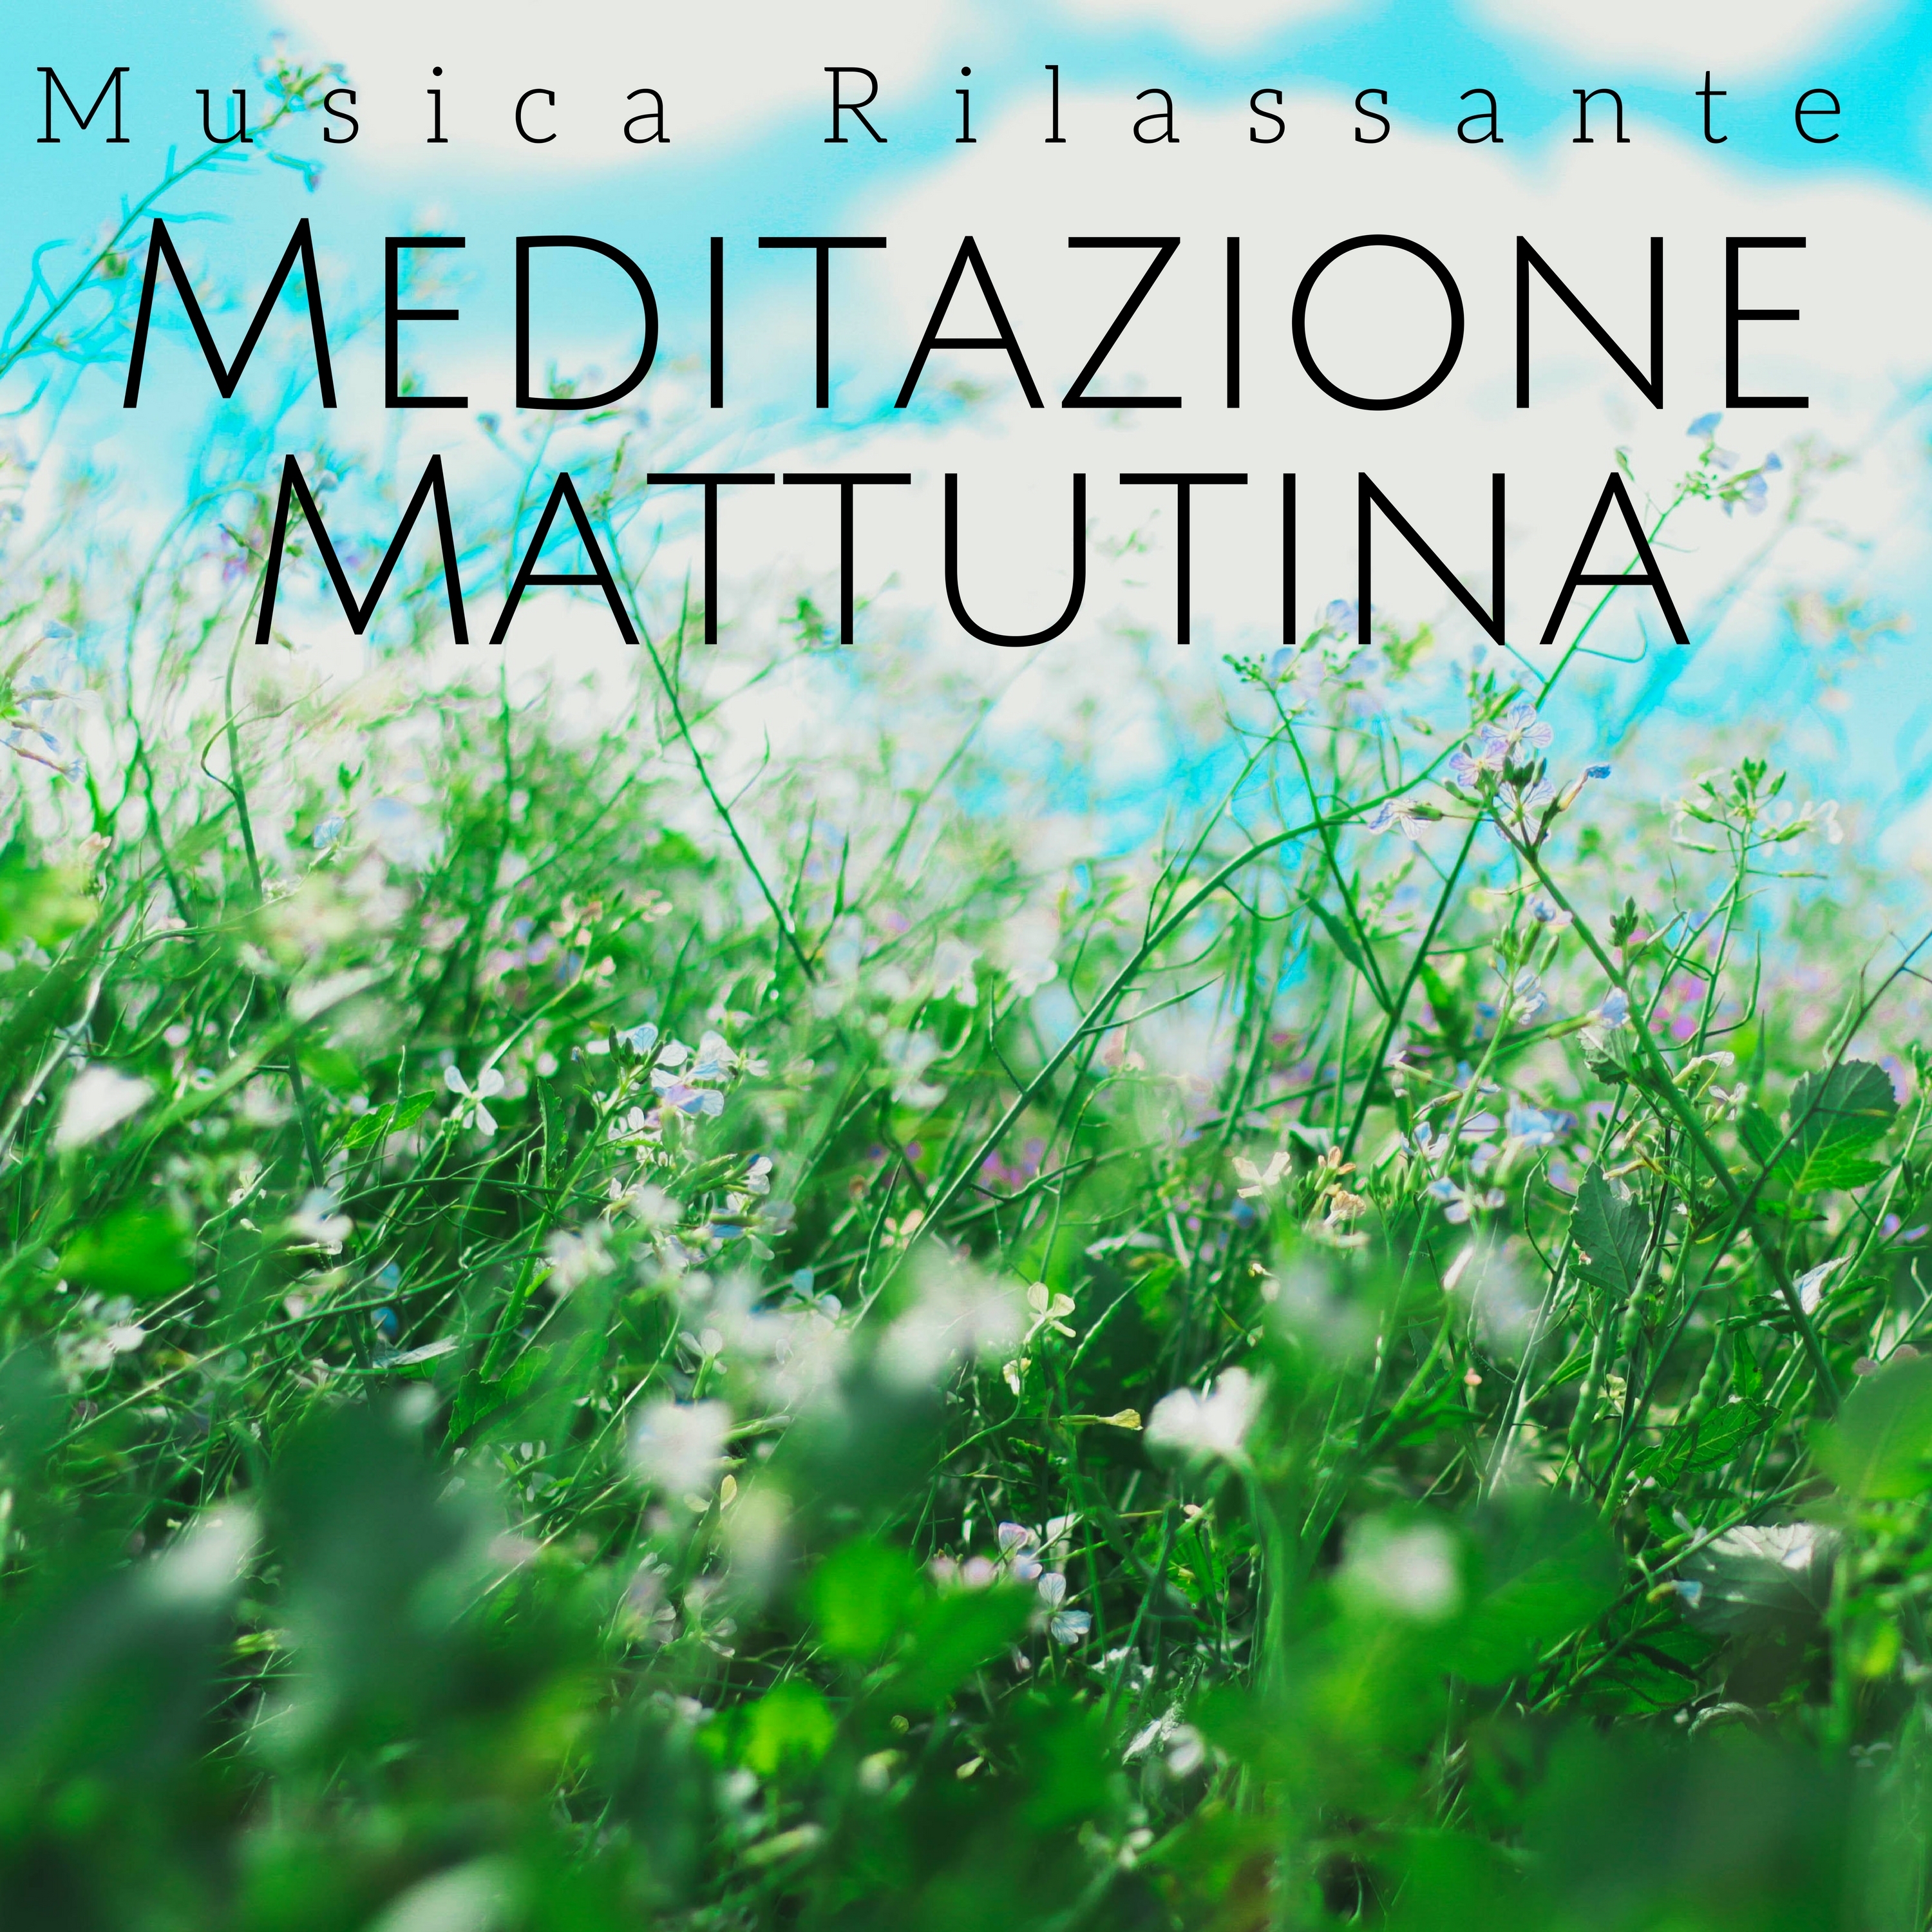 Meditazione Mattutina